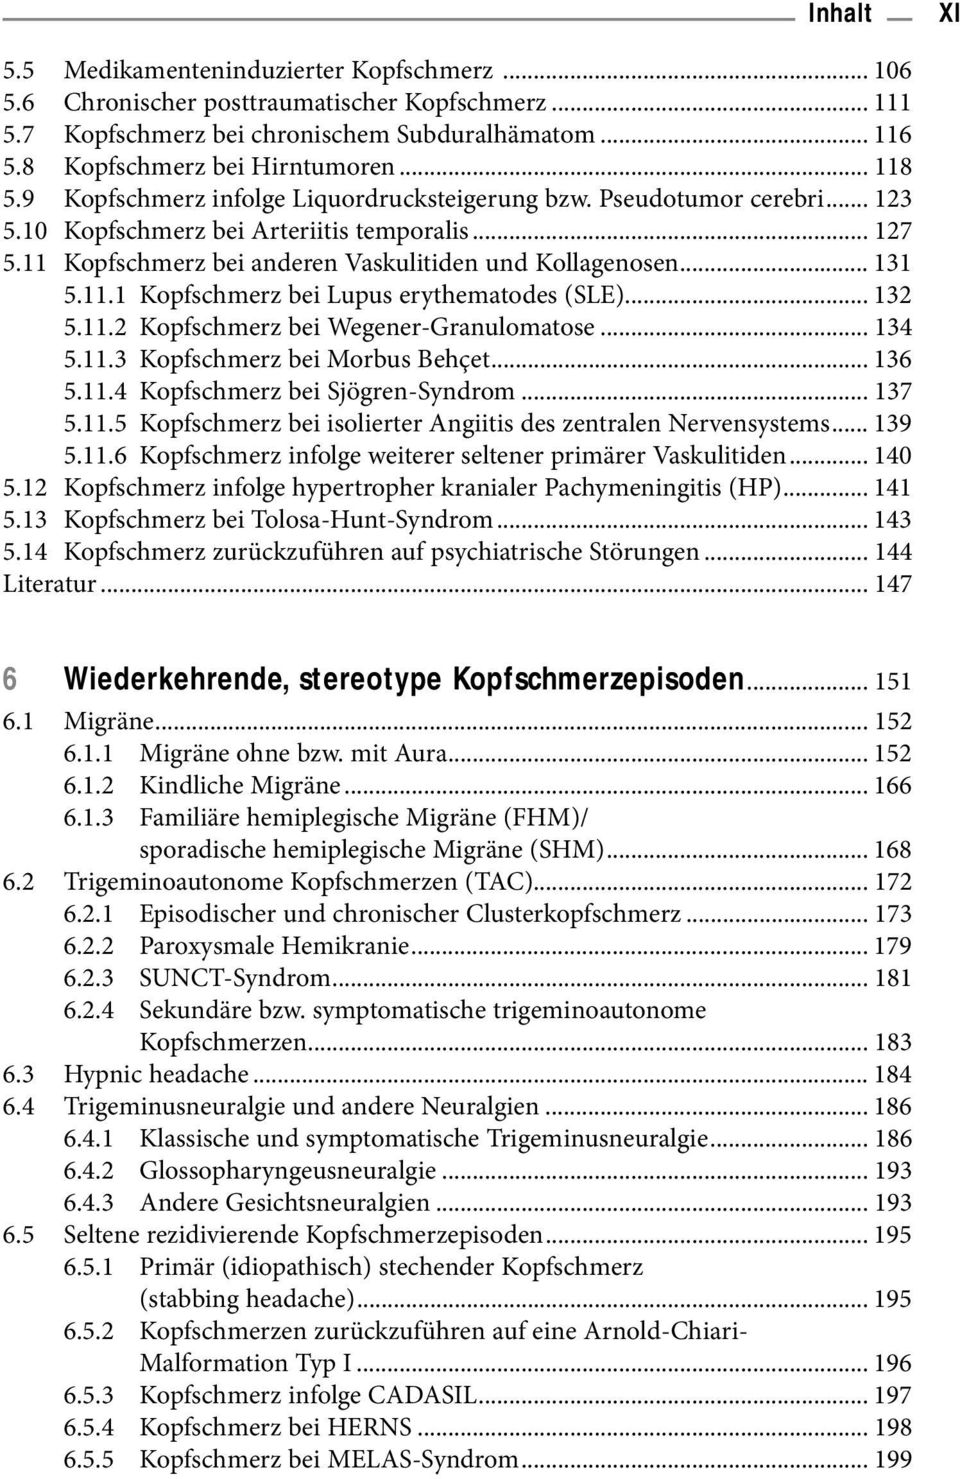 .. 131 5.11.1 Kopfschmerz bei Lupus erythematodes (SLE)... 132 5.11.2 Kopfschmerz bei Wegener-Granulomatose... 134 5.11.3 Kopfschmerz bei Morbus Behçet... 136 5.11.4 Kopfschmerz bei Sjögren-Syndrom.